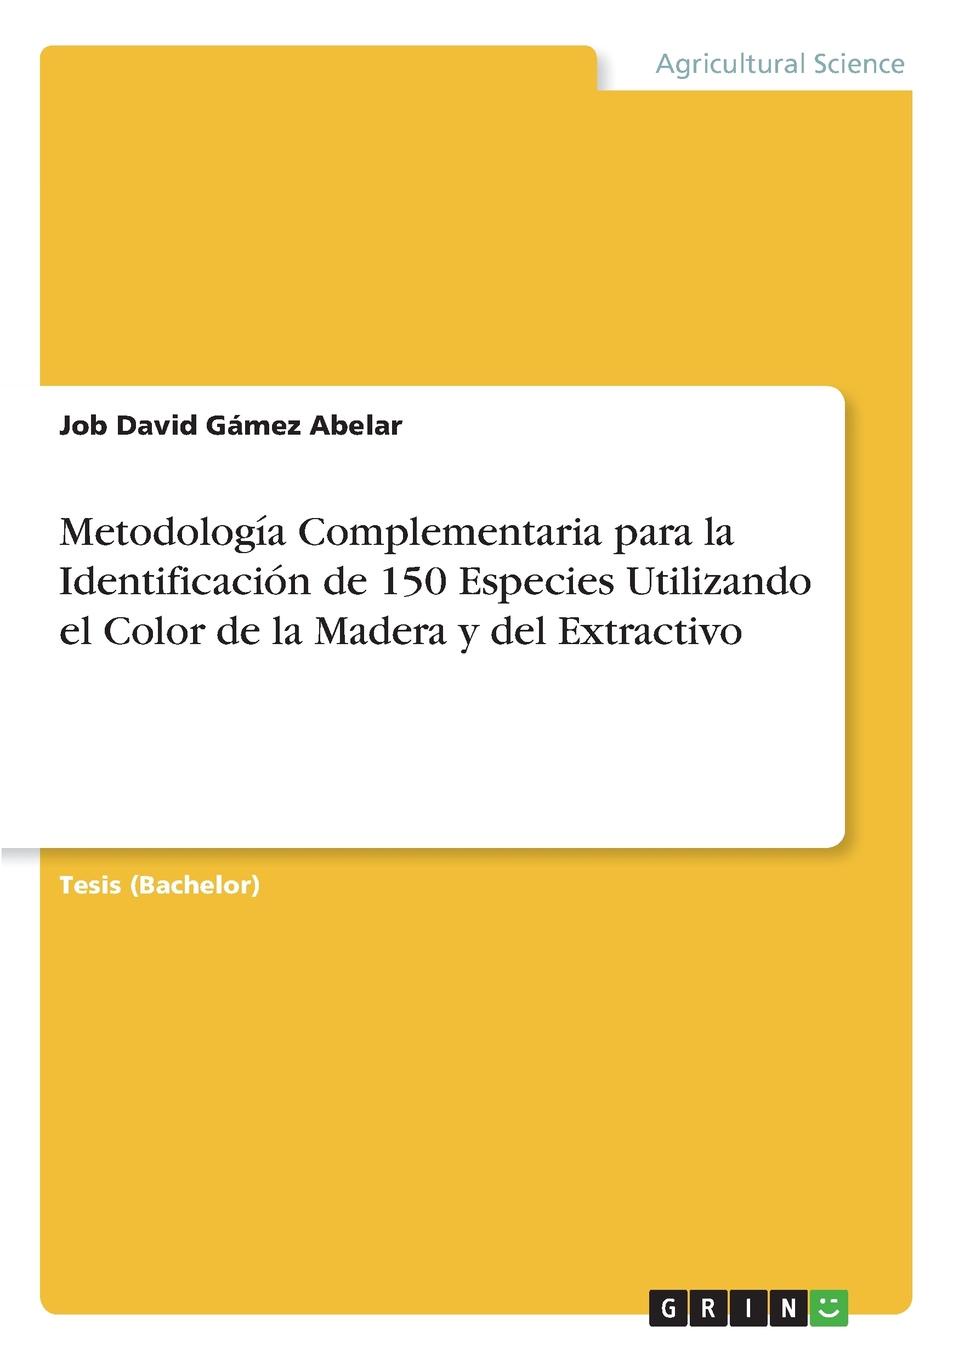 Job David Gámez Abelar Metodologia Complementaria para la Identificacion de 150 Especies Utilizando el Color de la Madera y del Extractivo